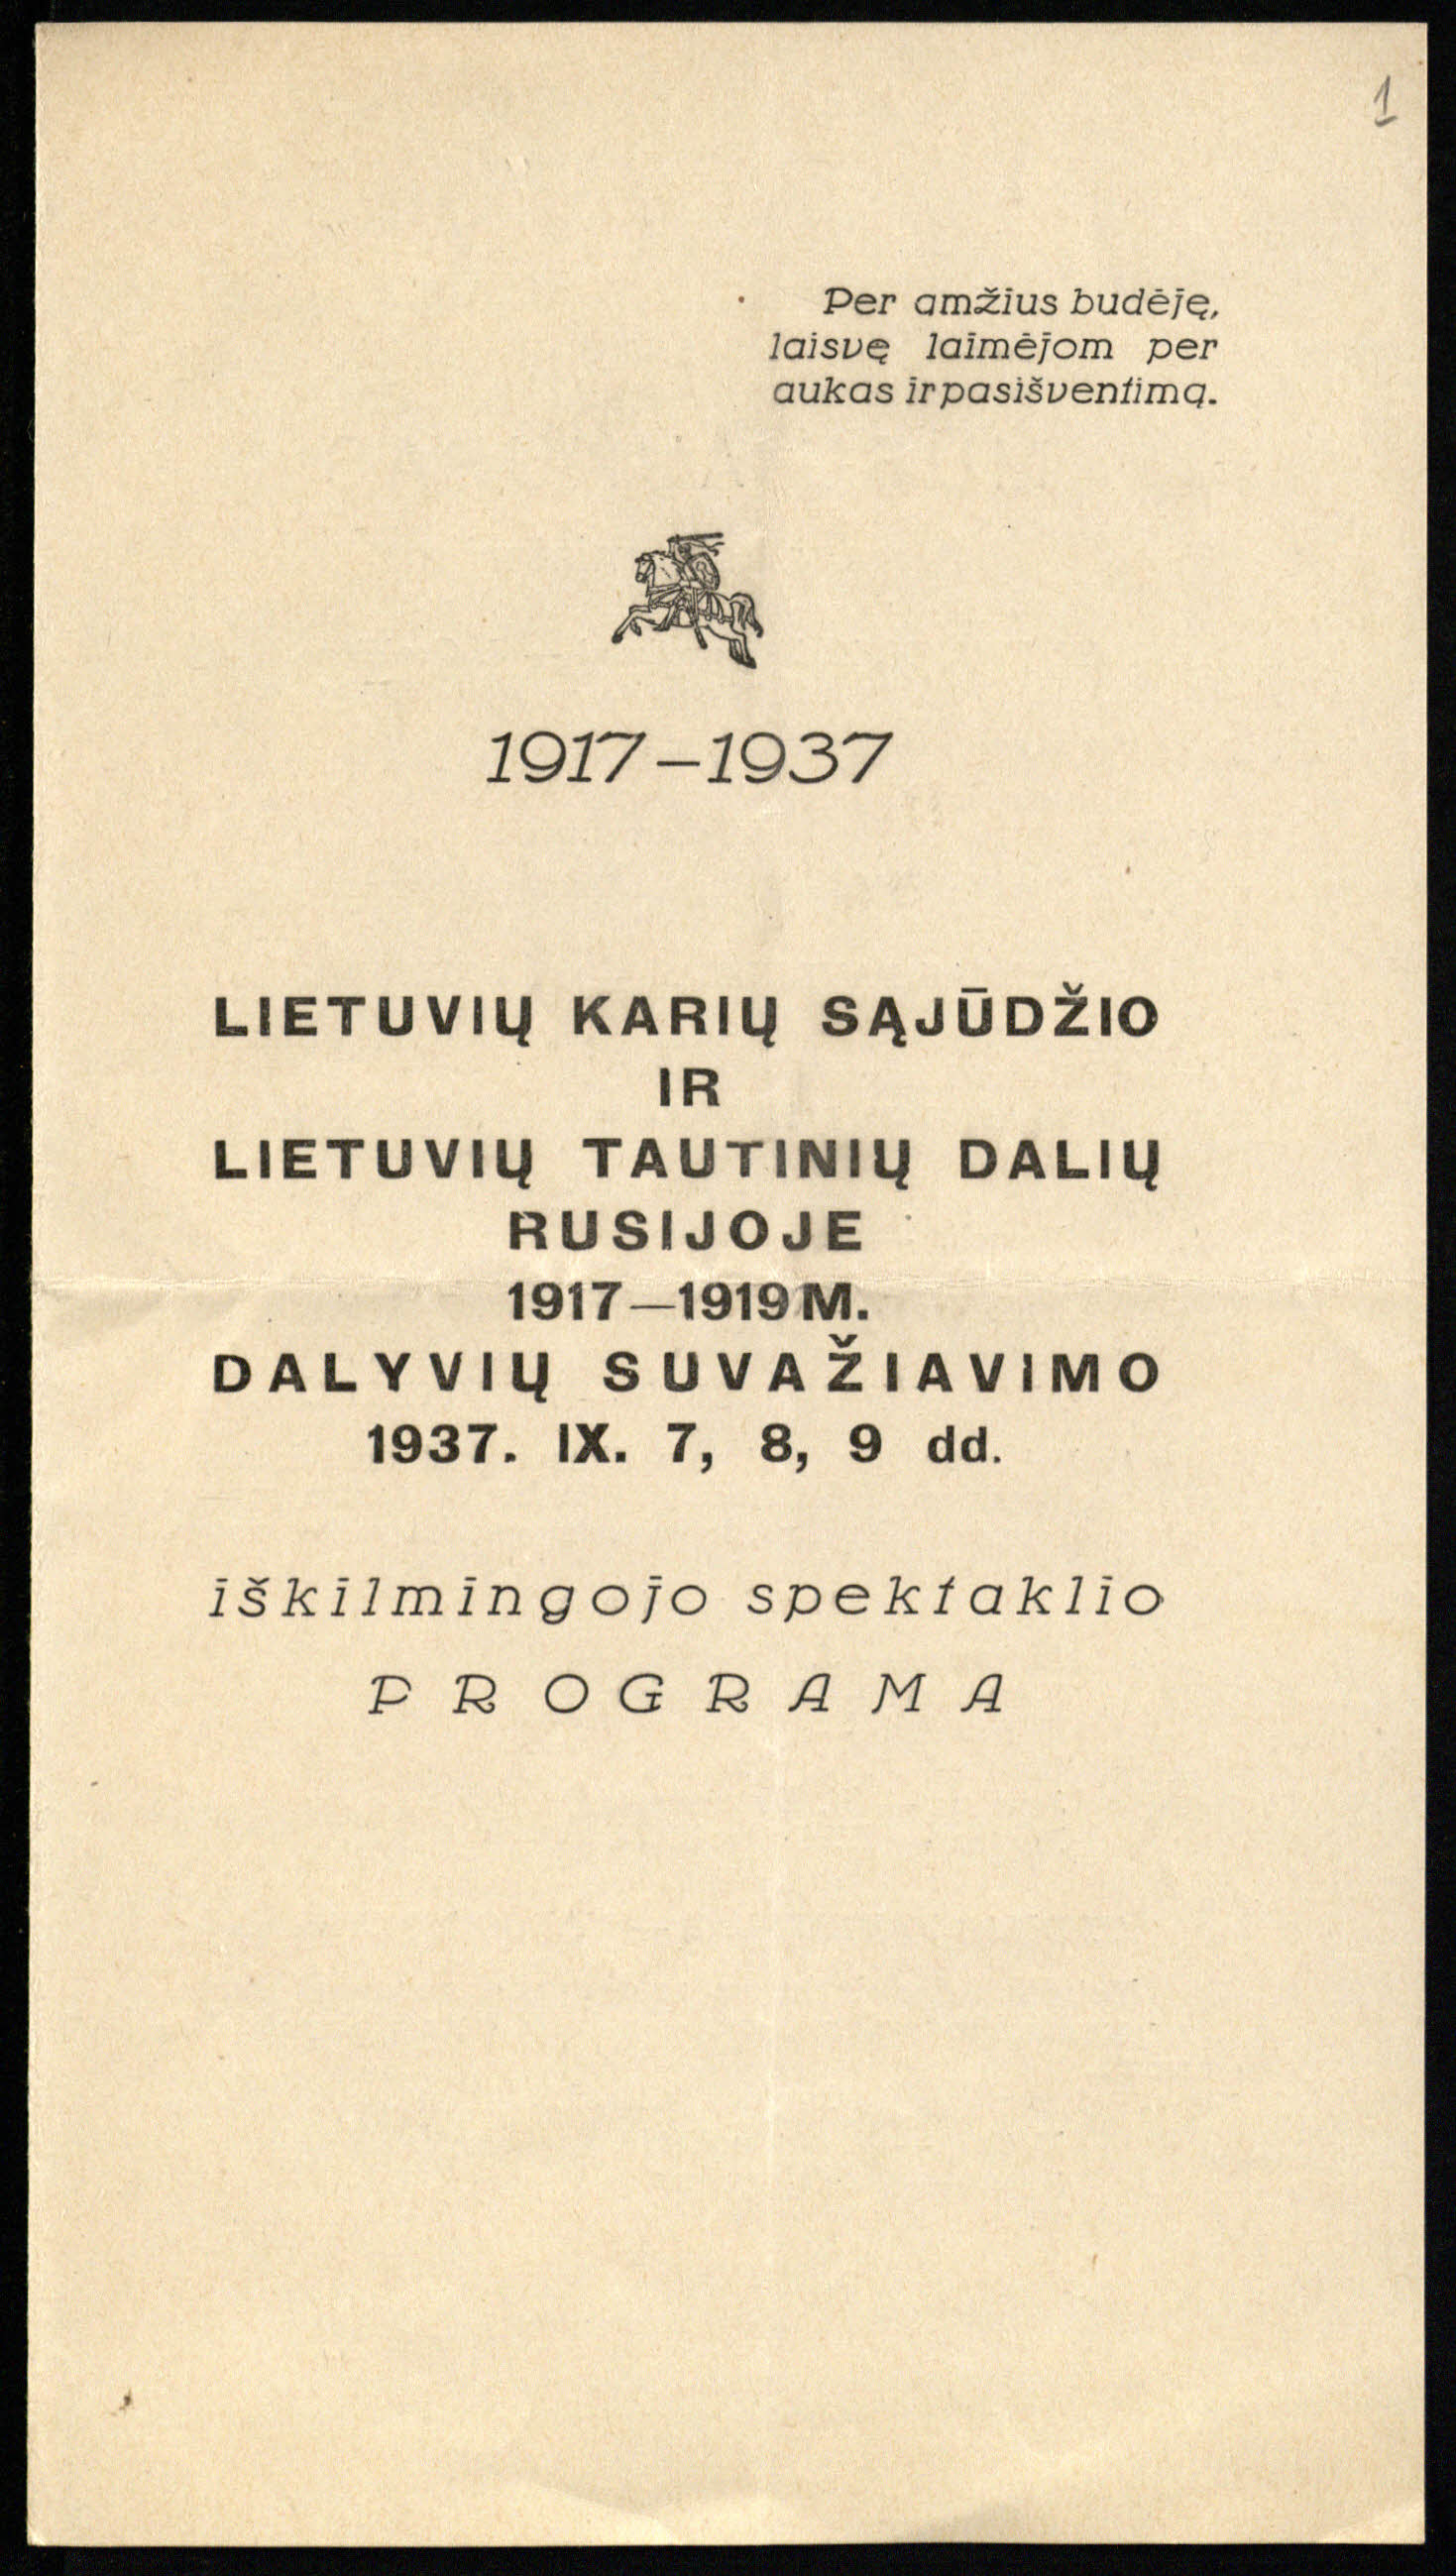 Lietuvių karių sąjūdžio ir lietuvių tautinių dalių  Rusijoje 1917–1919 m. dalyvių suvažiavimo 1937 rugsėjo 7–9 d. iškilmingojo spektaklio programa